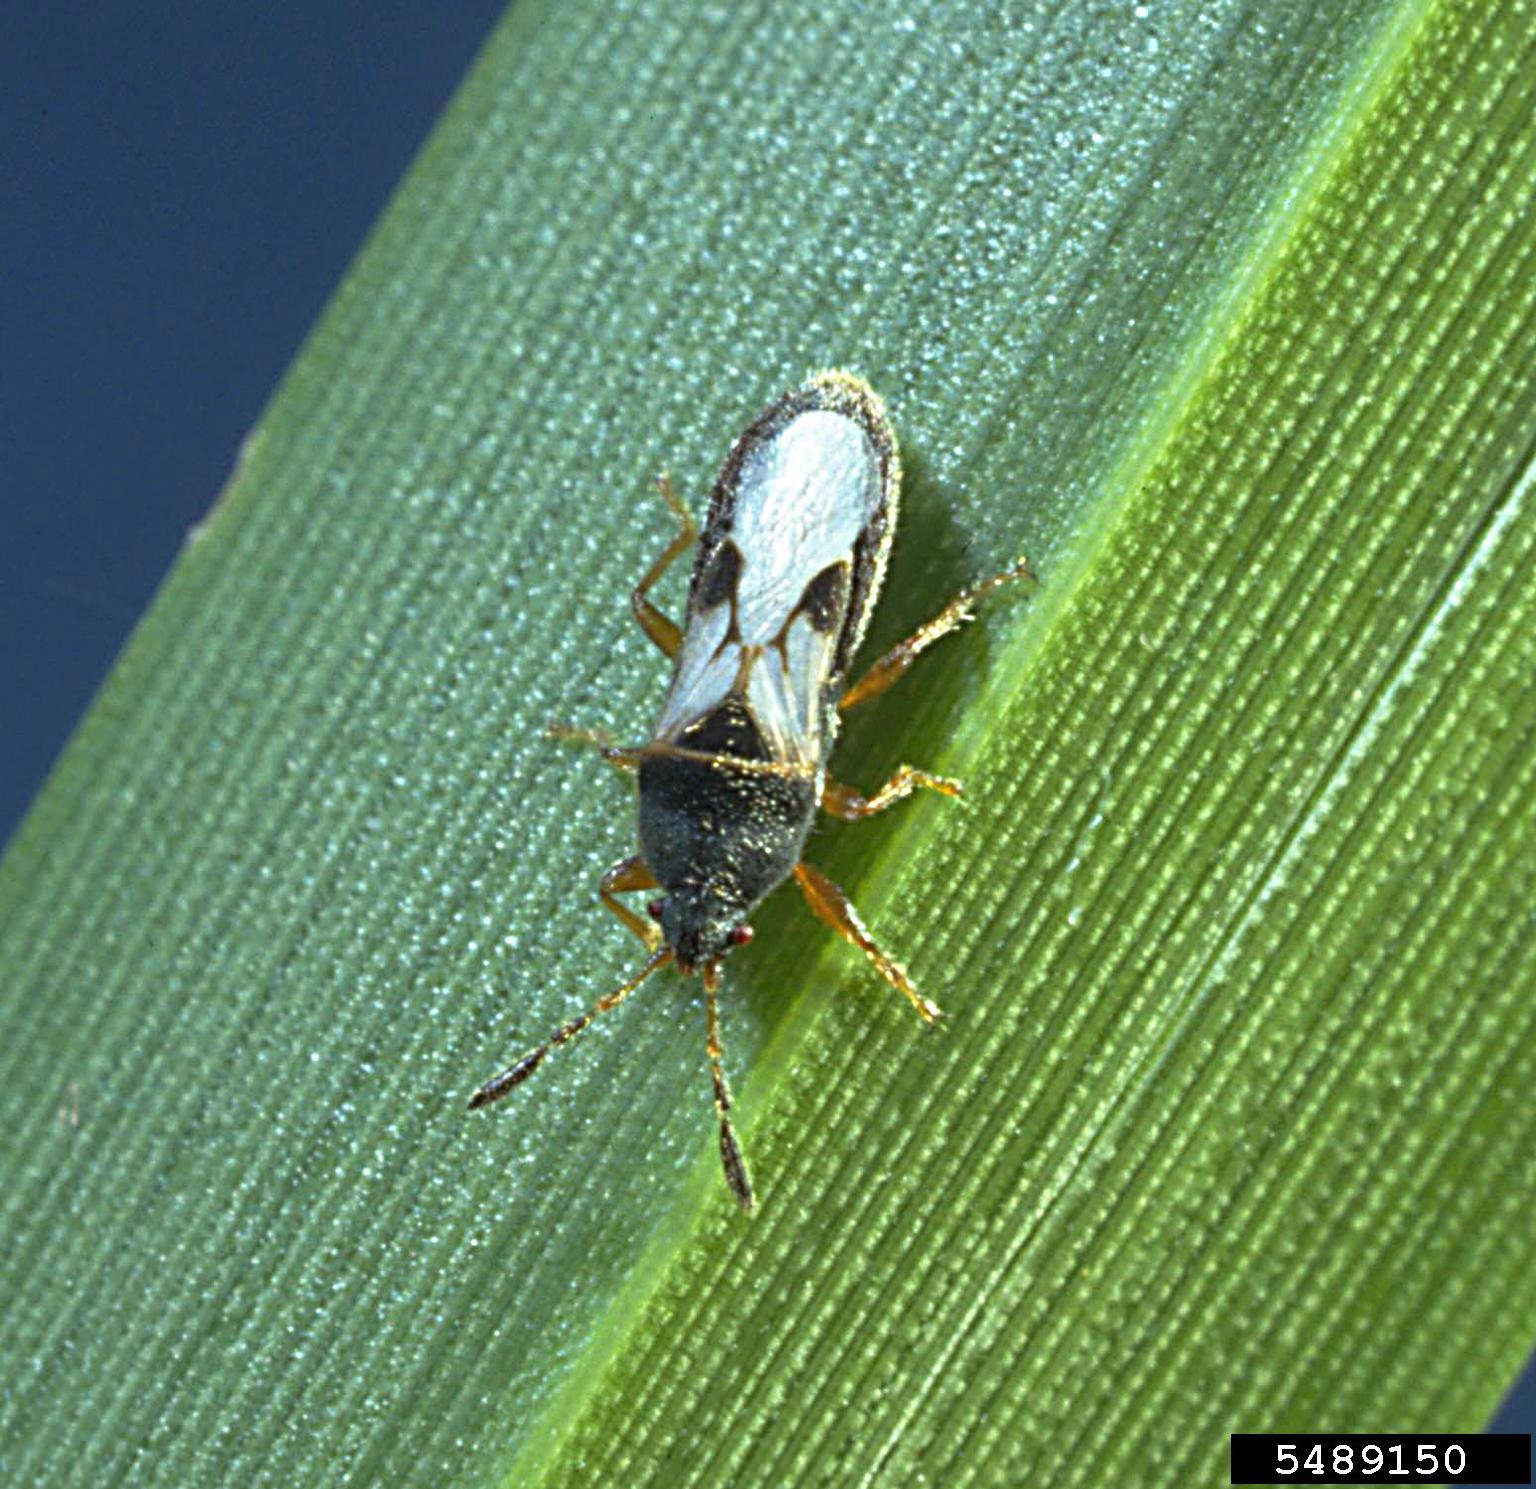 Adult southern chinch bug on a leaf